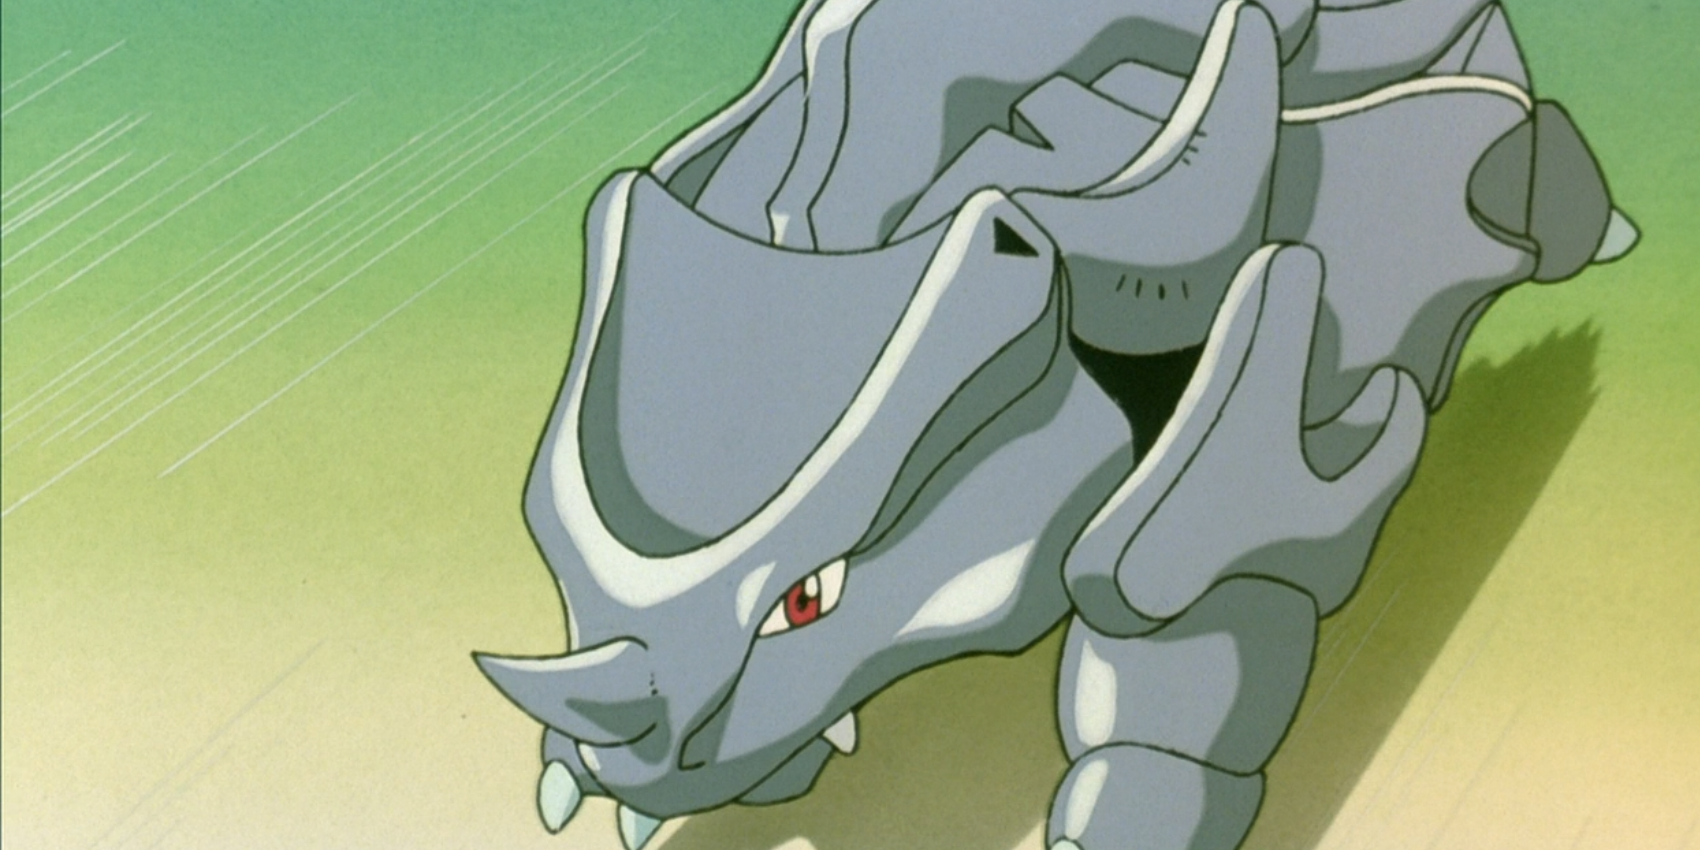 Rhyhorn from the Pokémon anime series